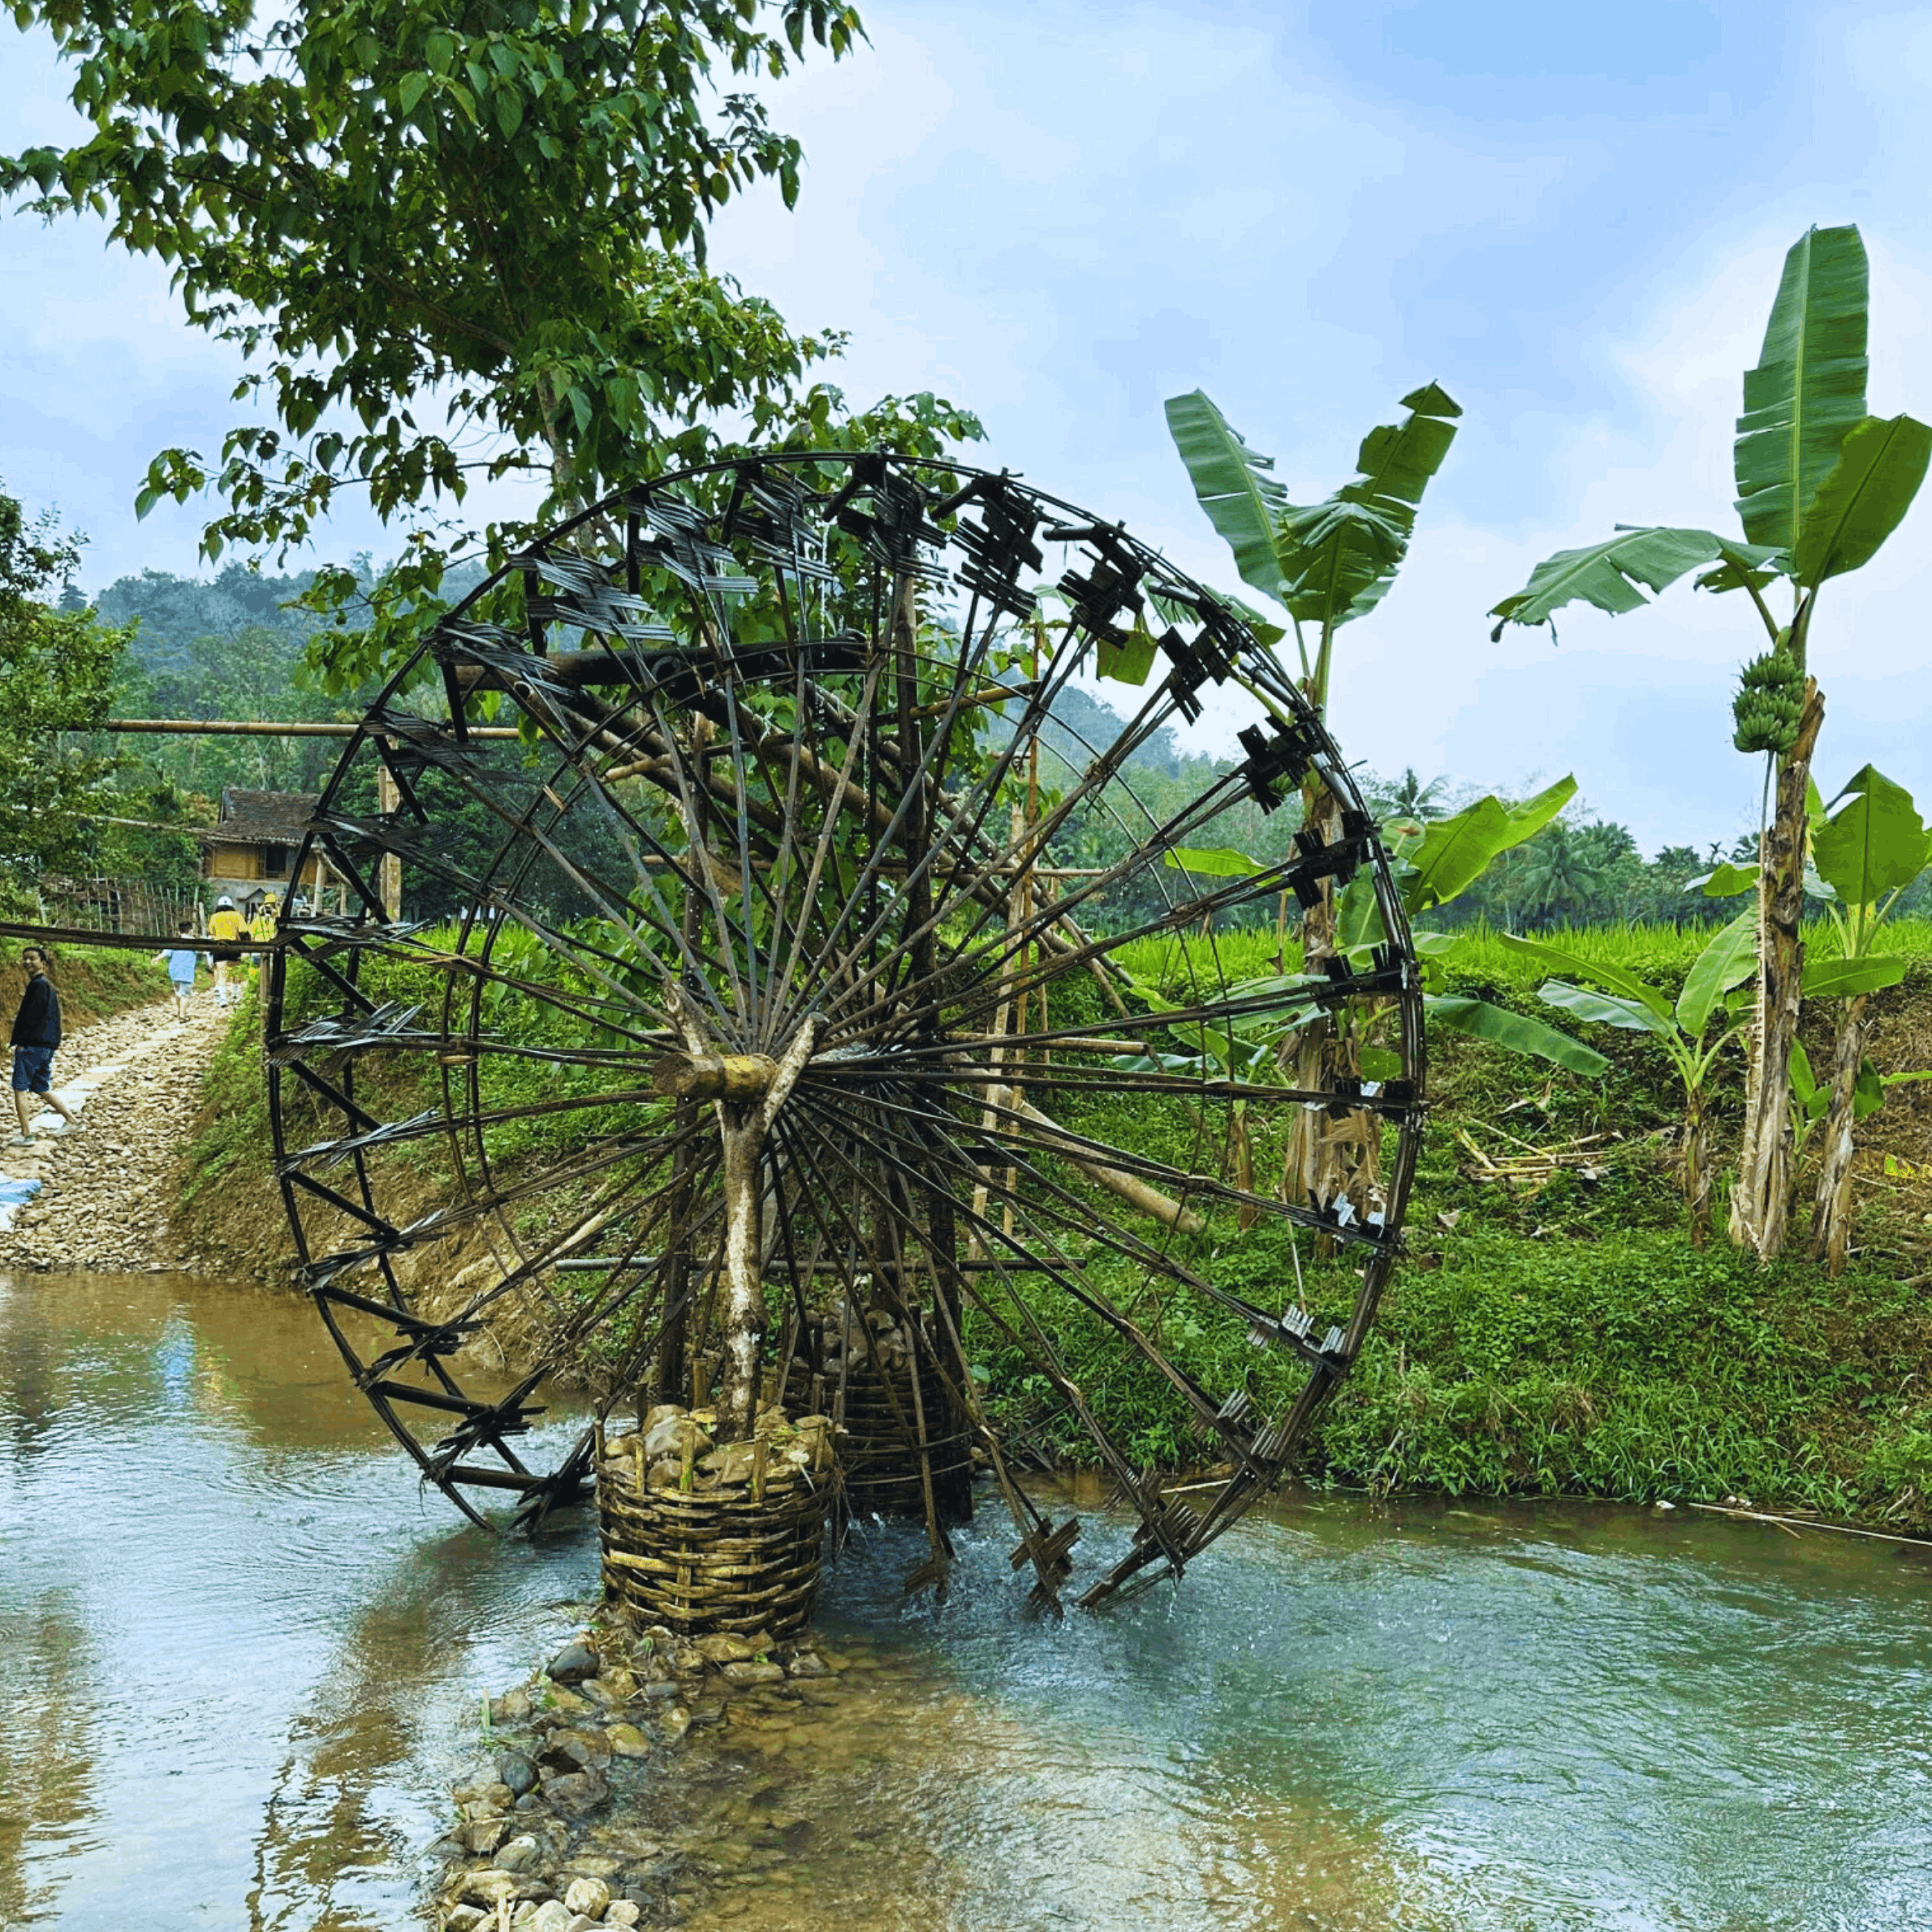 Dai villaggi idilliaci di Mai Hich alle gigantesche ruote idrauliche di Pu Luong